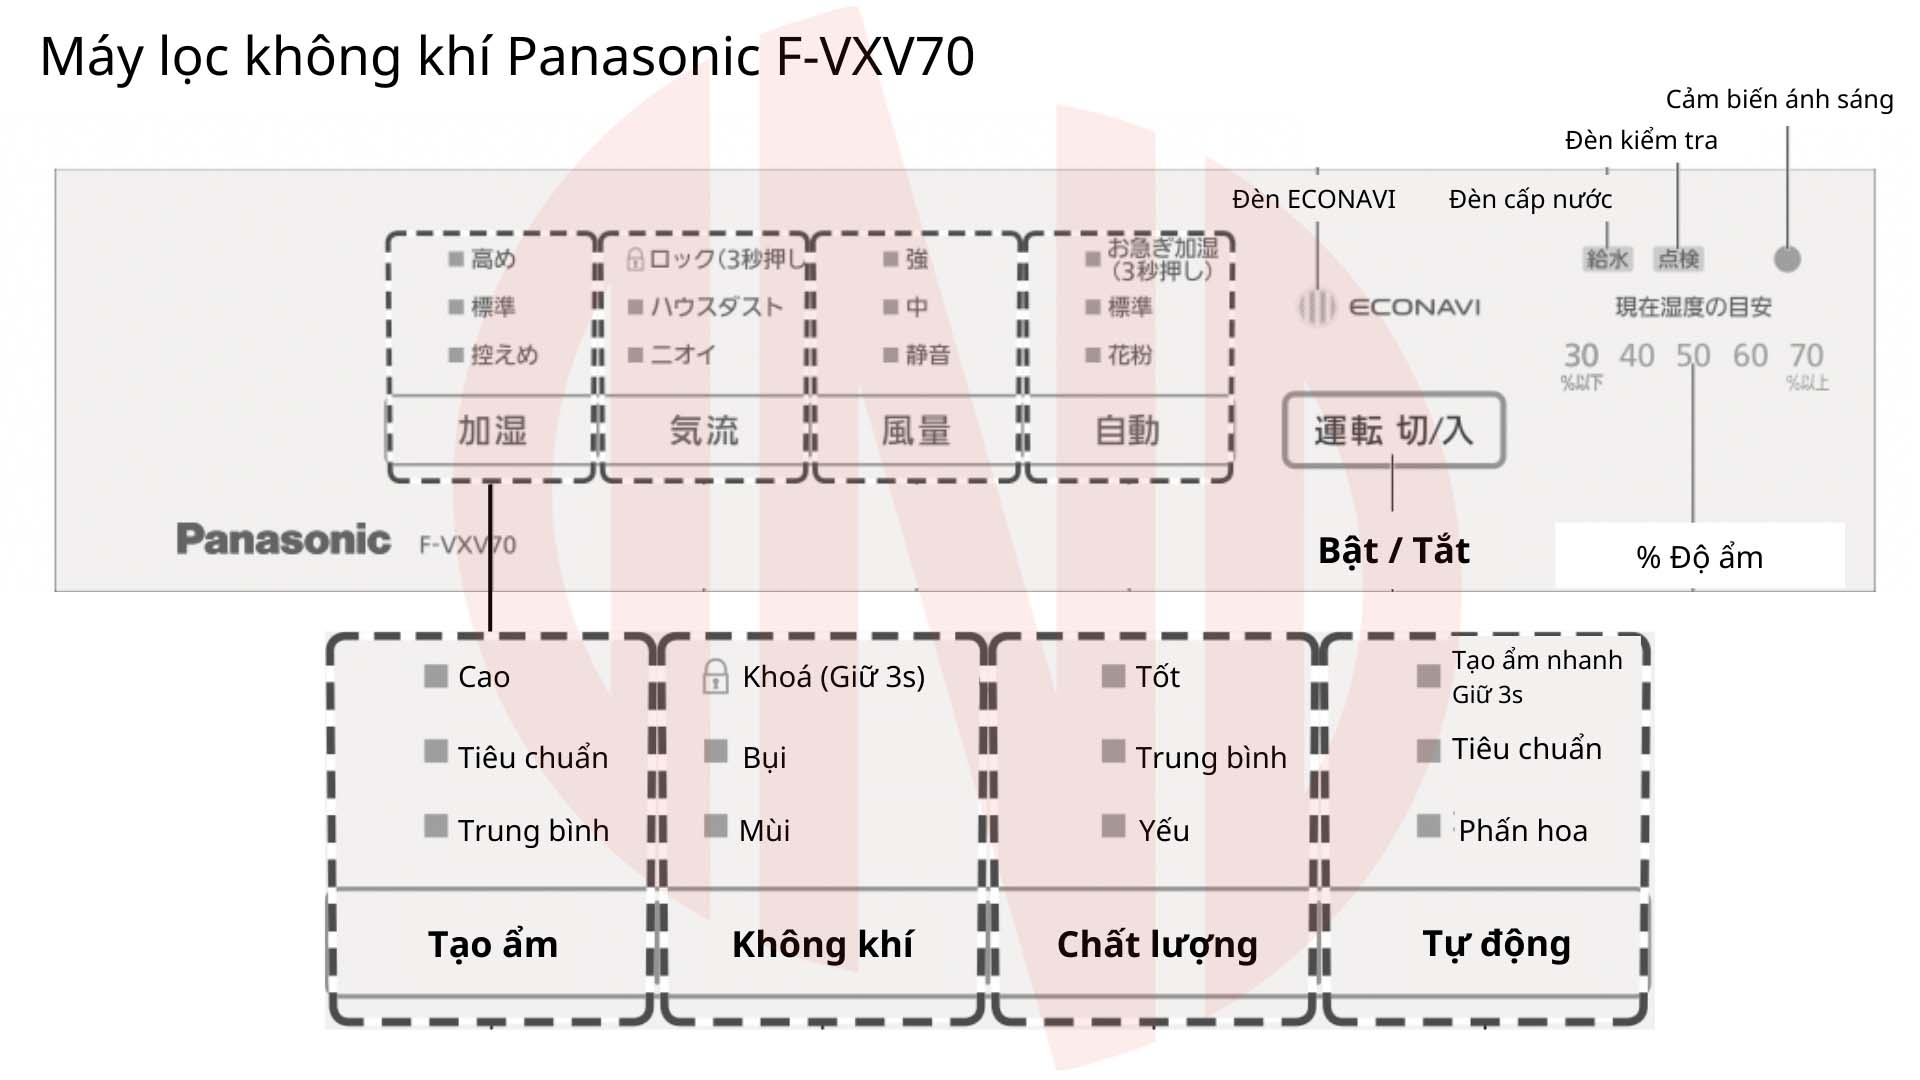 Hướng dẫn sử dụng máy lọc không khí Panasonic F-VXV70